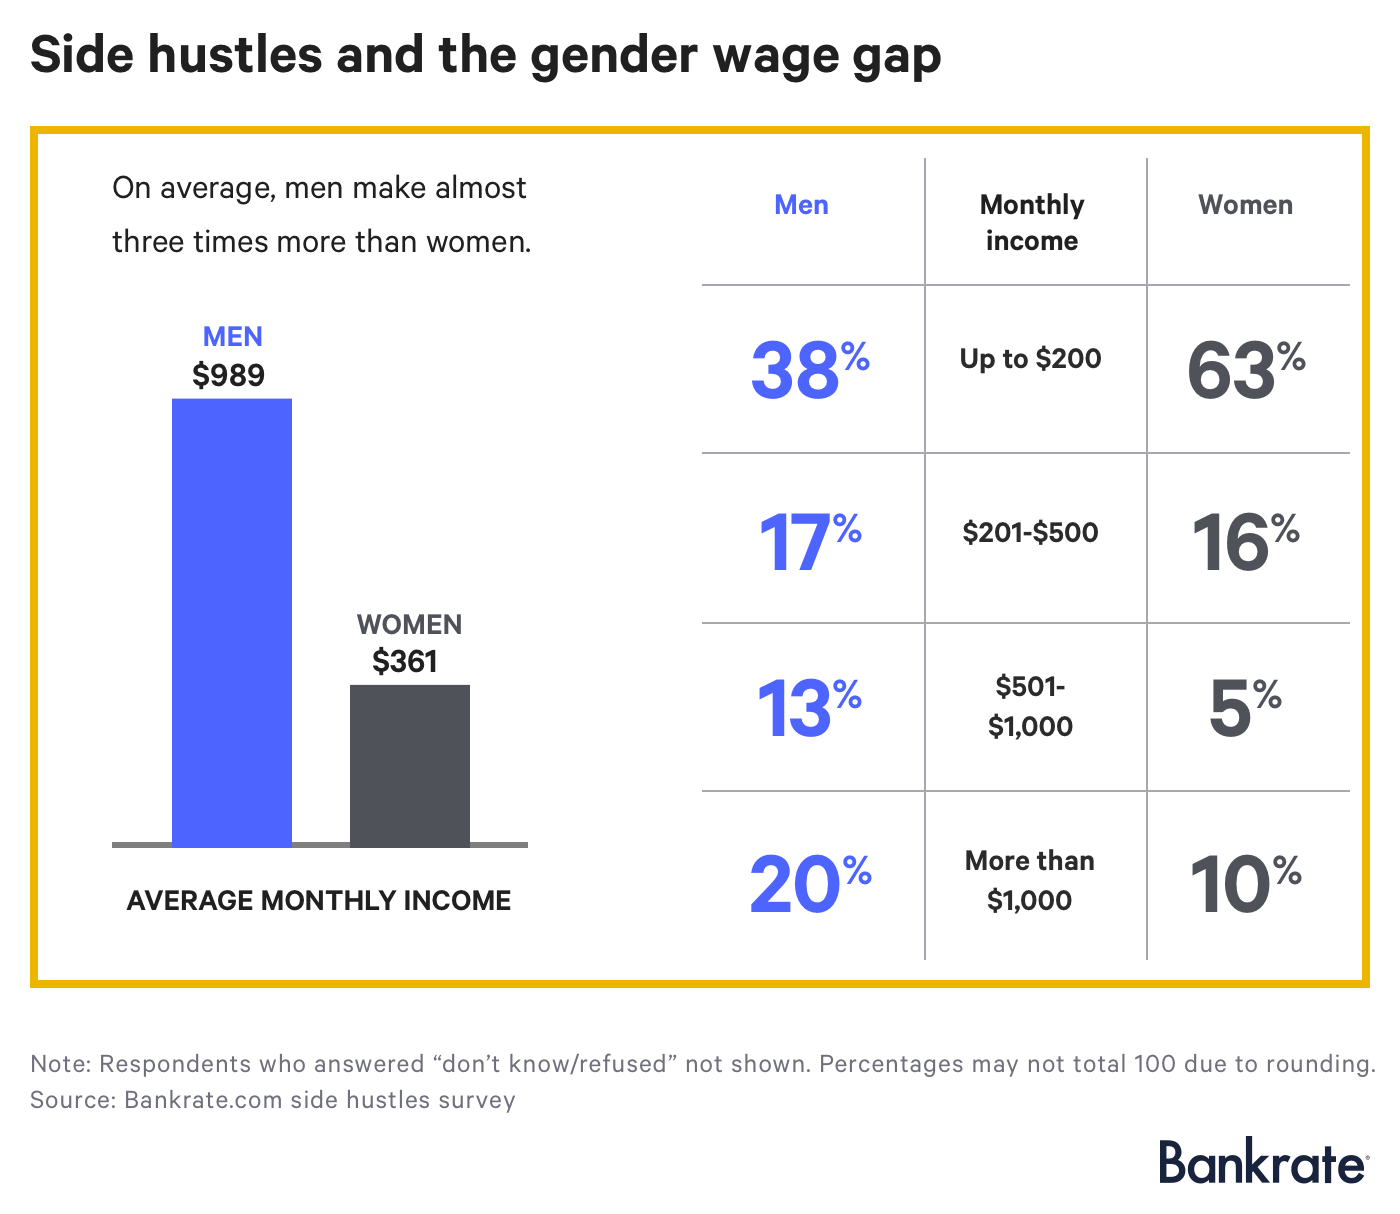 La estampida y la brecha salarial de género